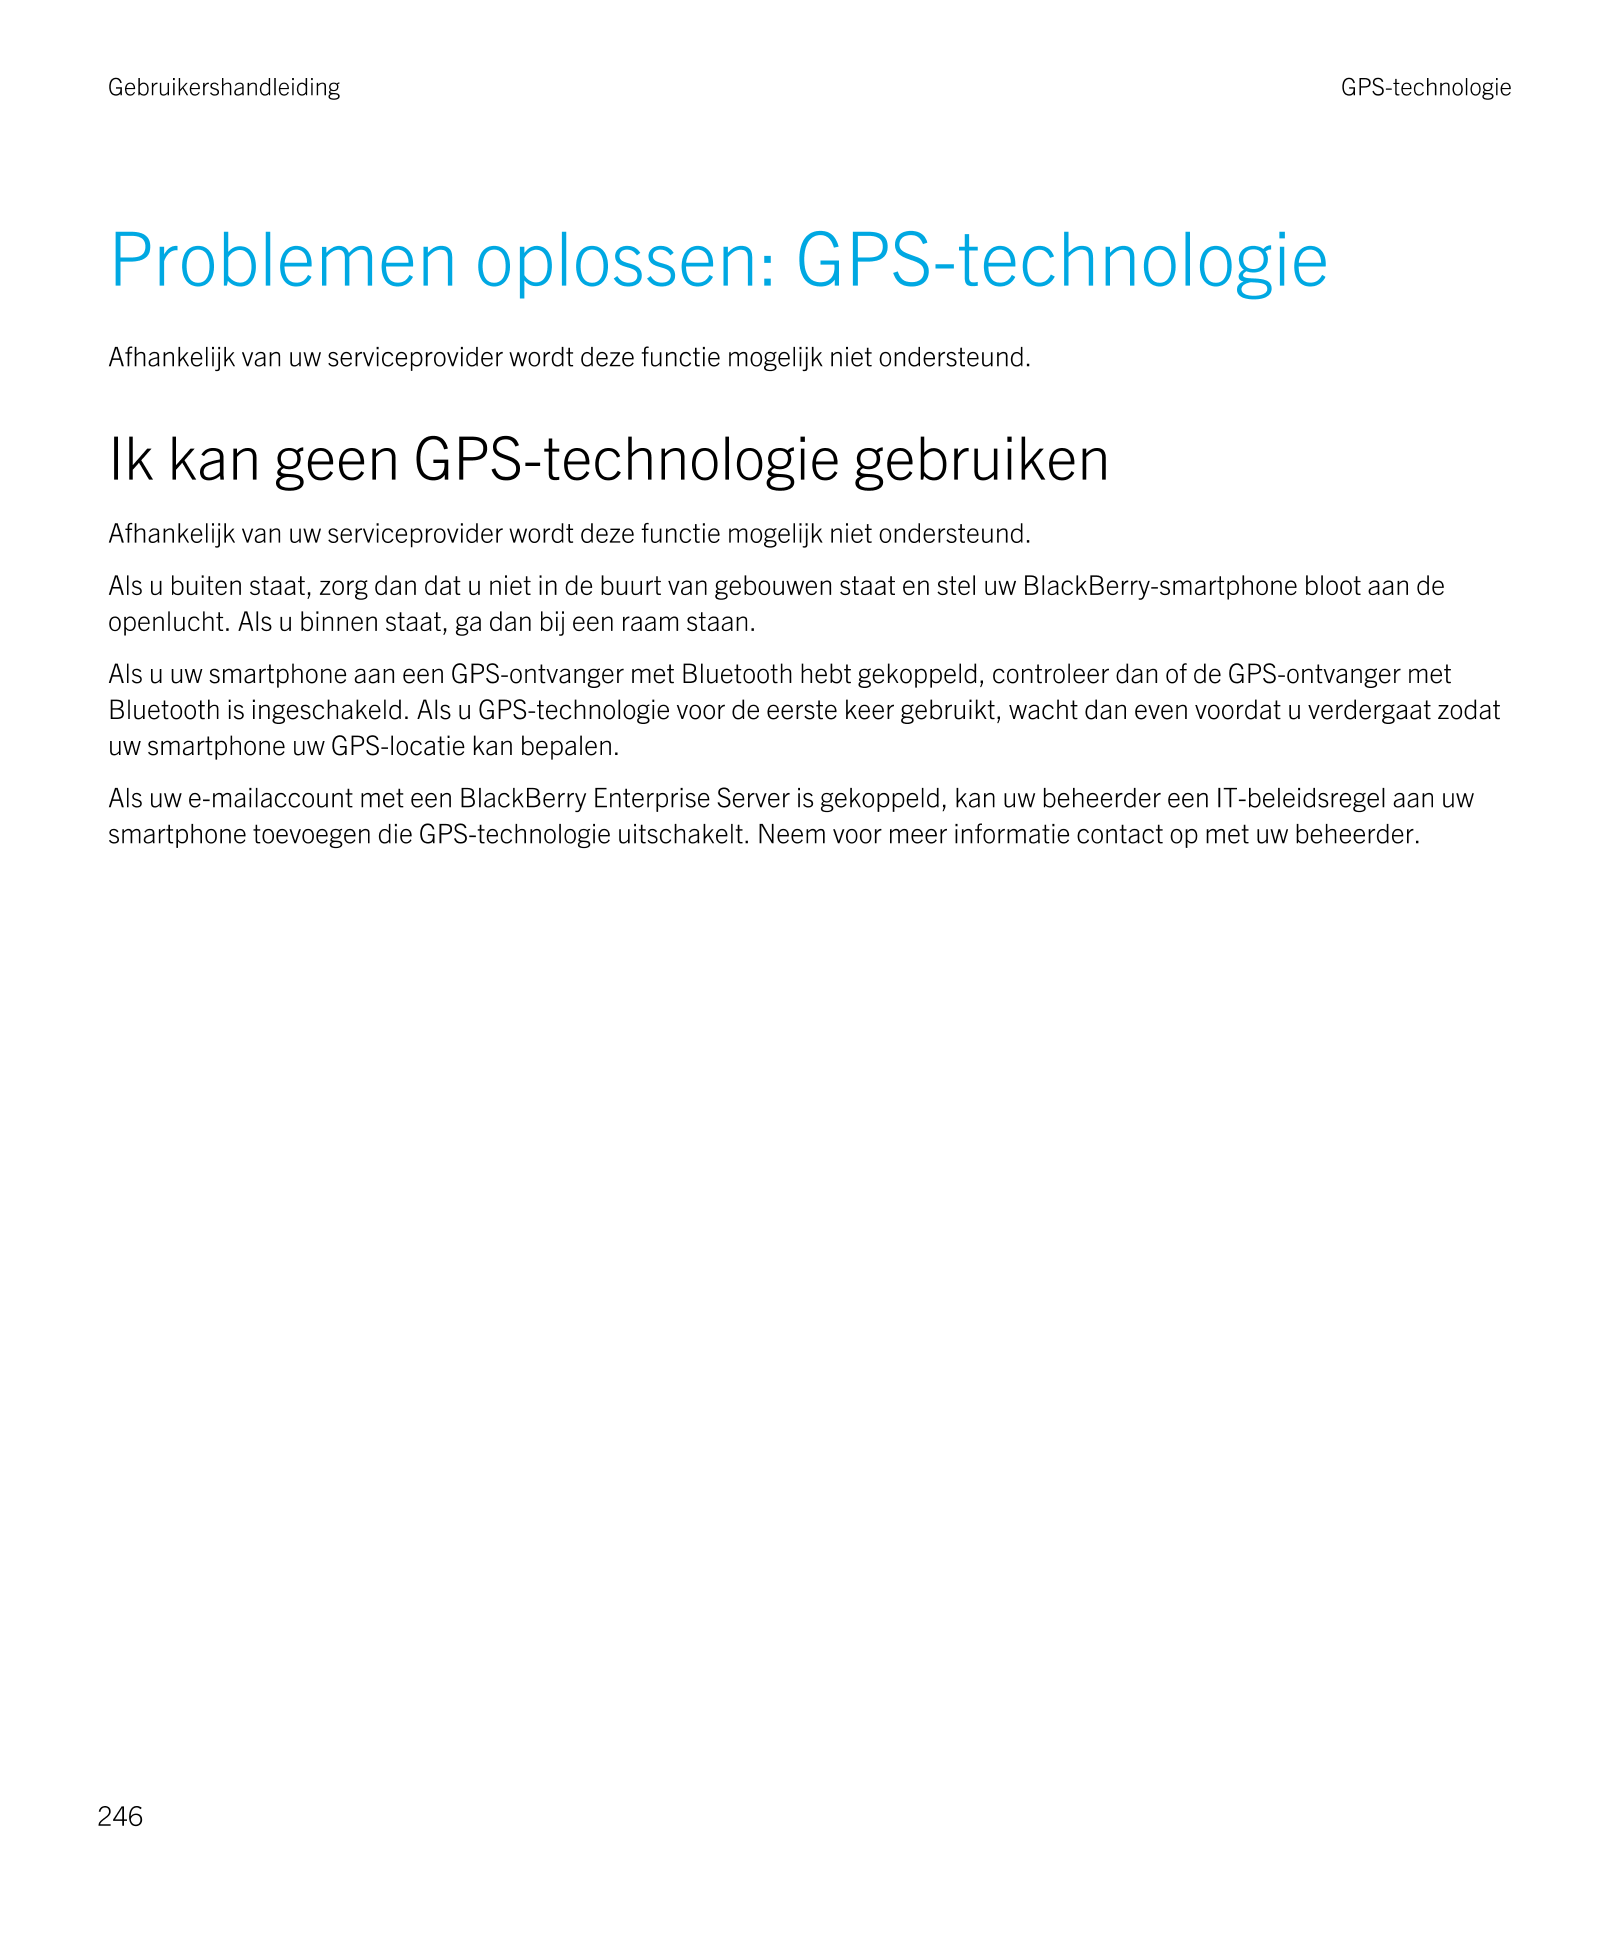 Gebruikershandleiding GPS-technologie
Problemen oplossen: GPS-technologie
Afhankelijk van uw serviceprovider wordt deze functie 